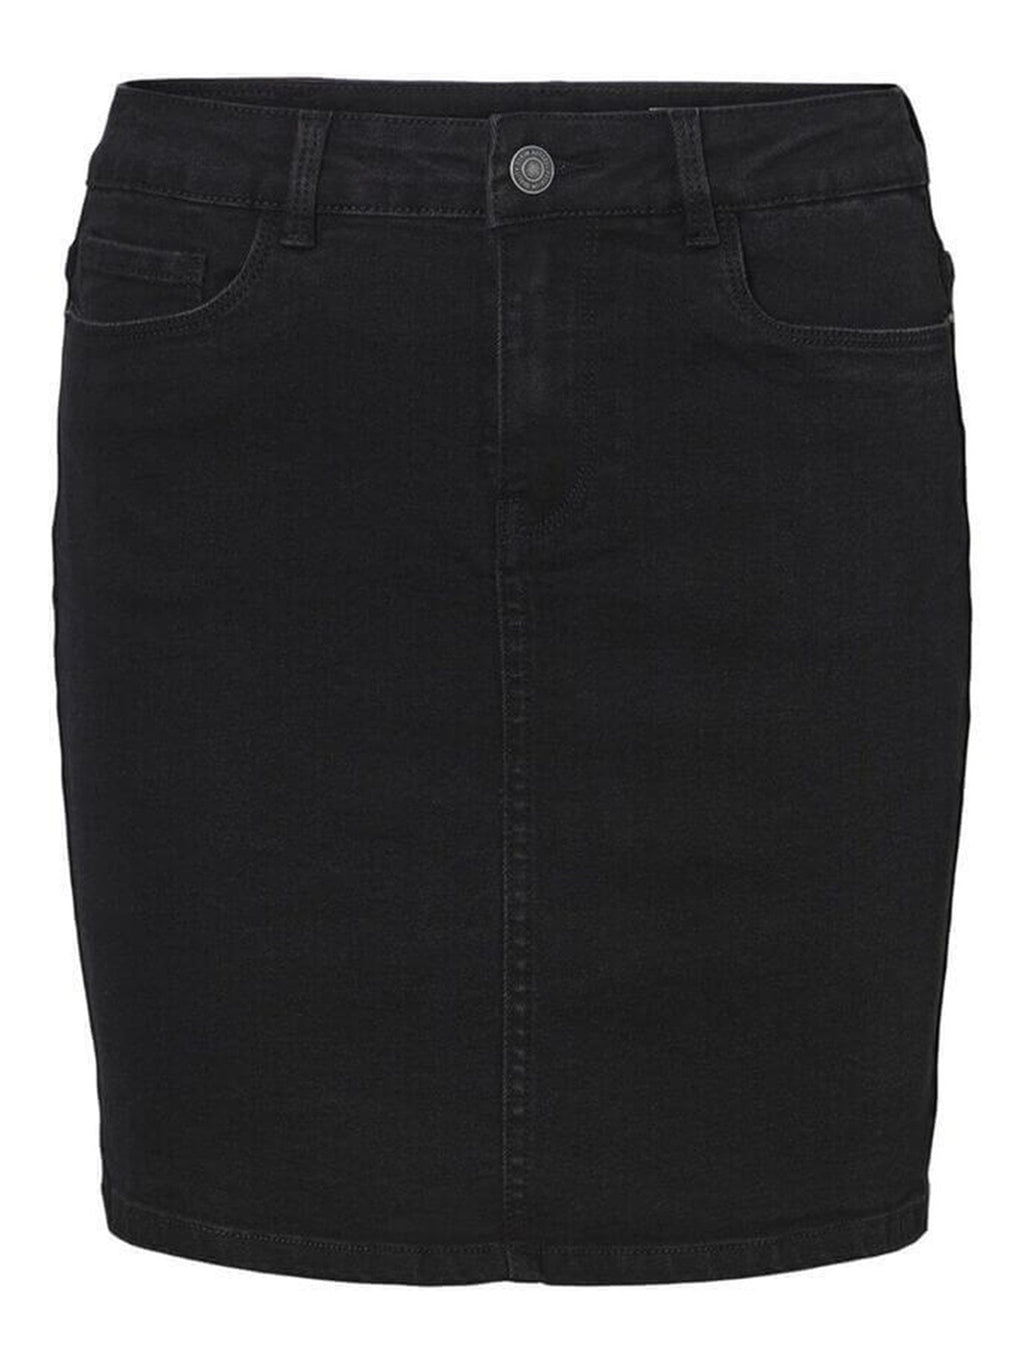 Karštas septynis sijonas - juodas džinsinis audinys